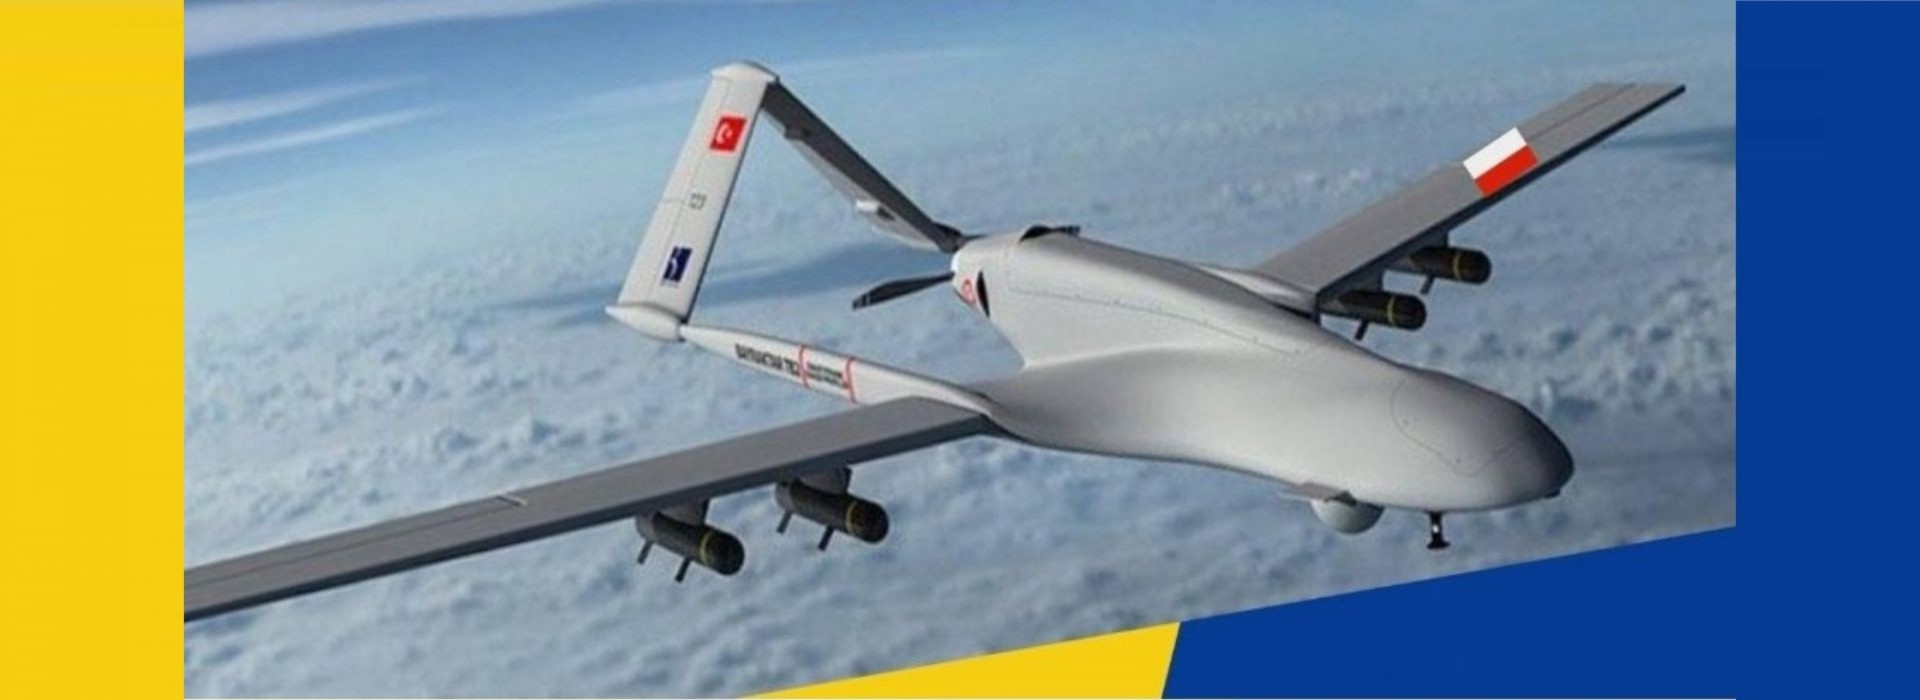 Sławomir Sierakowski o zbiórce na dron Bayraktar dla Ukrainy